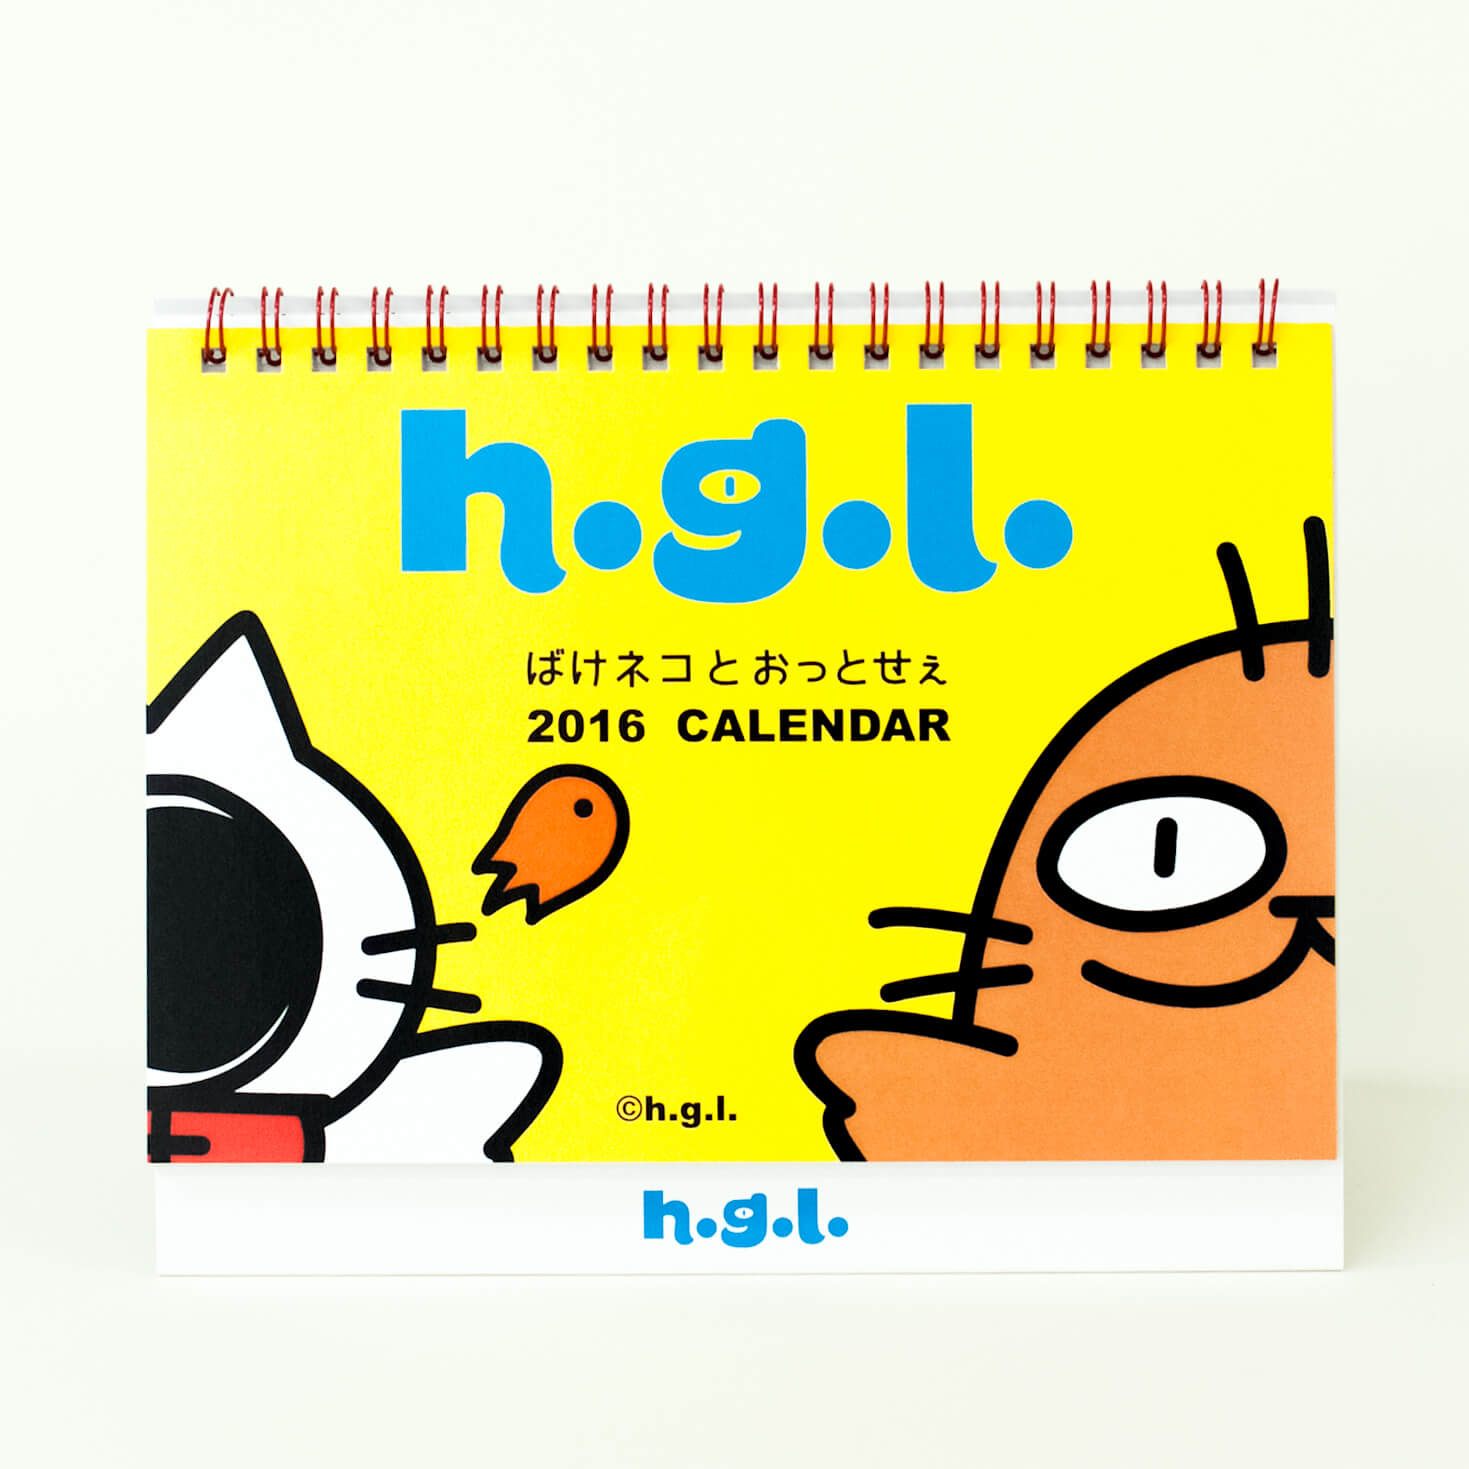 「h.g.l. 様」製作のオリジナルカレンダー